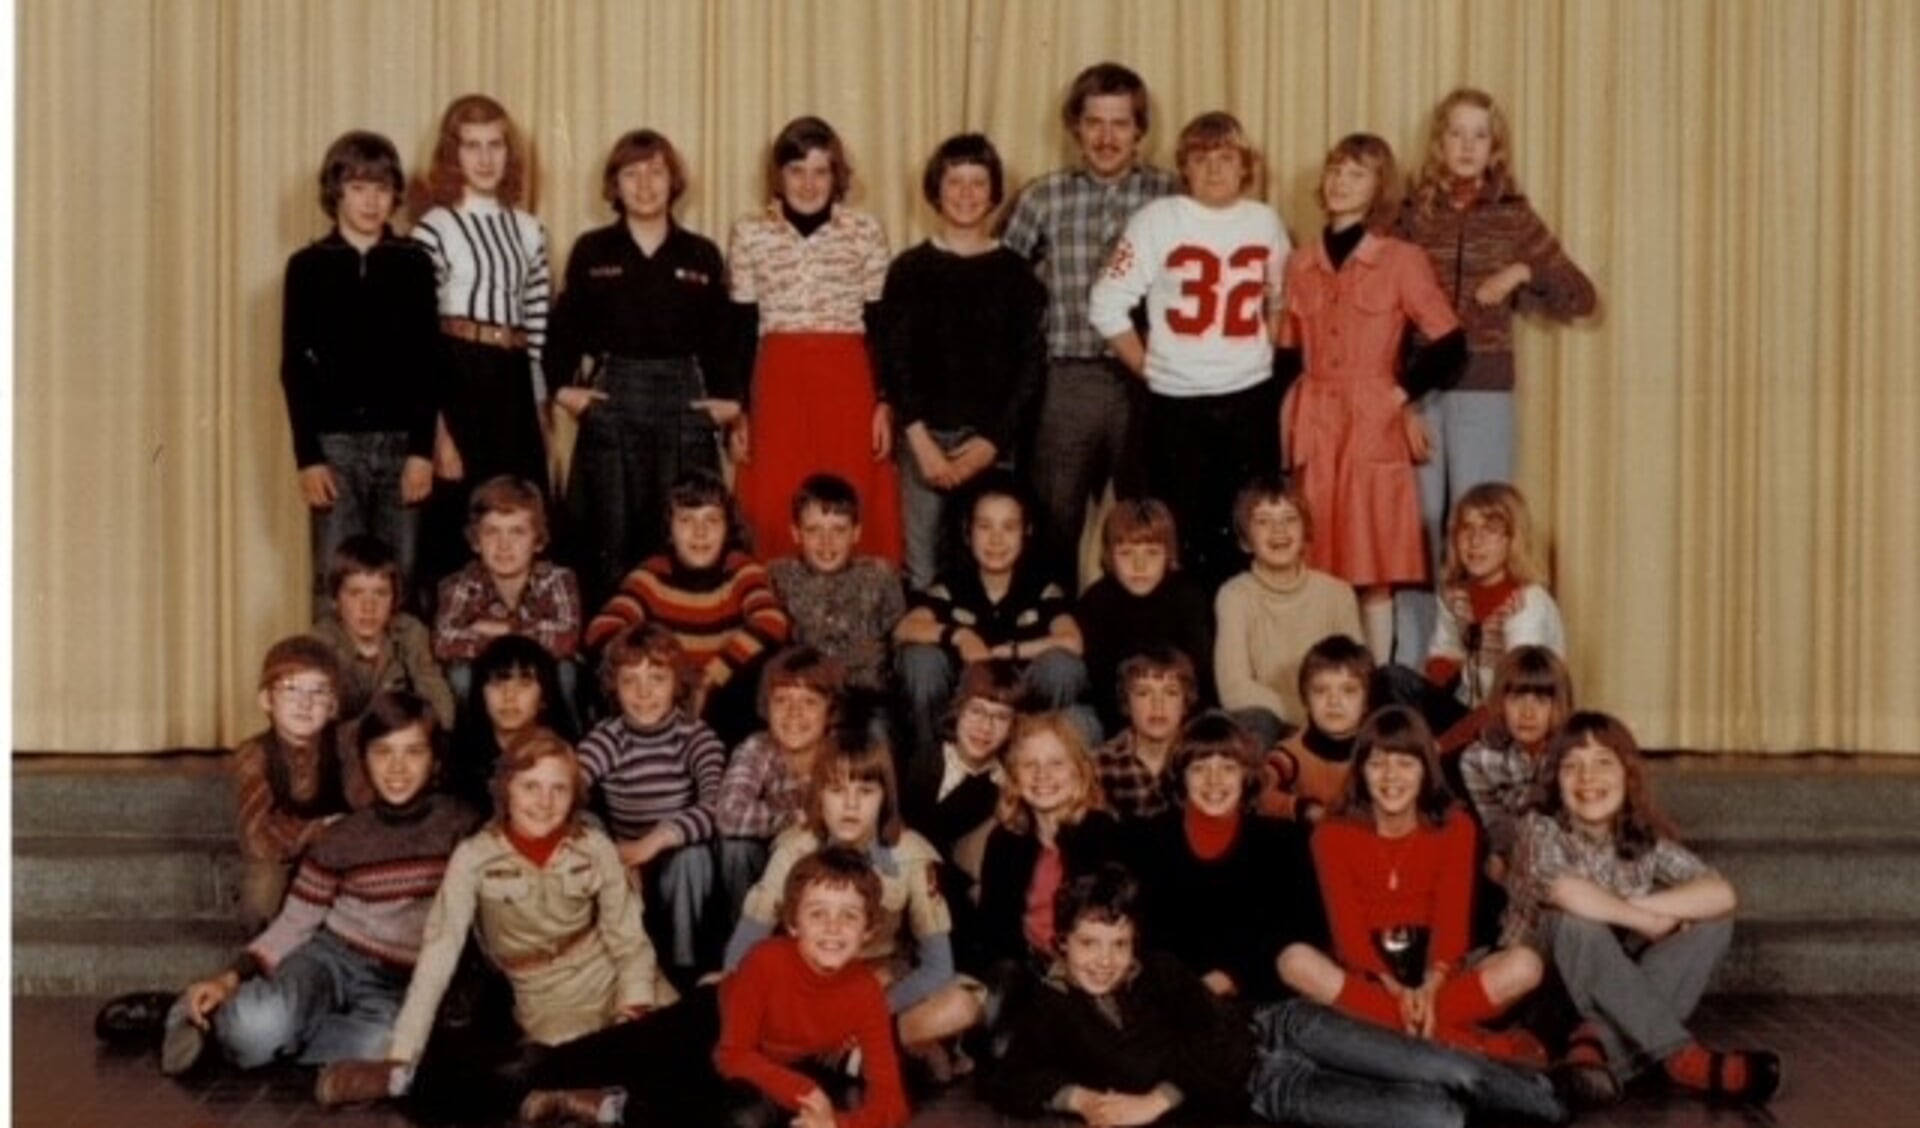 De klassenfoto van de zesde klas in 1977. Op de foto in 2022 is deze opstelling zoveel mogelijk nagebootst.